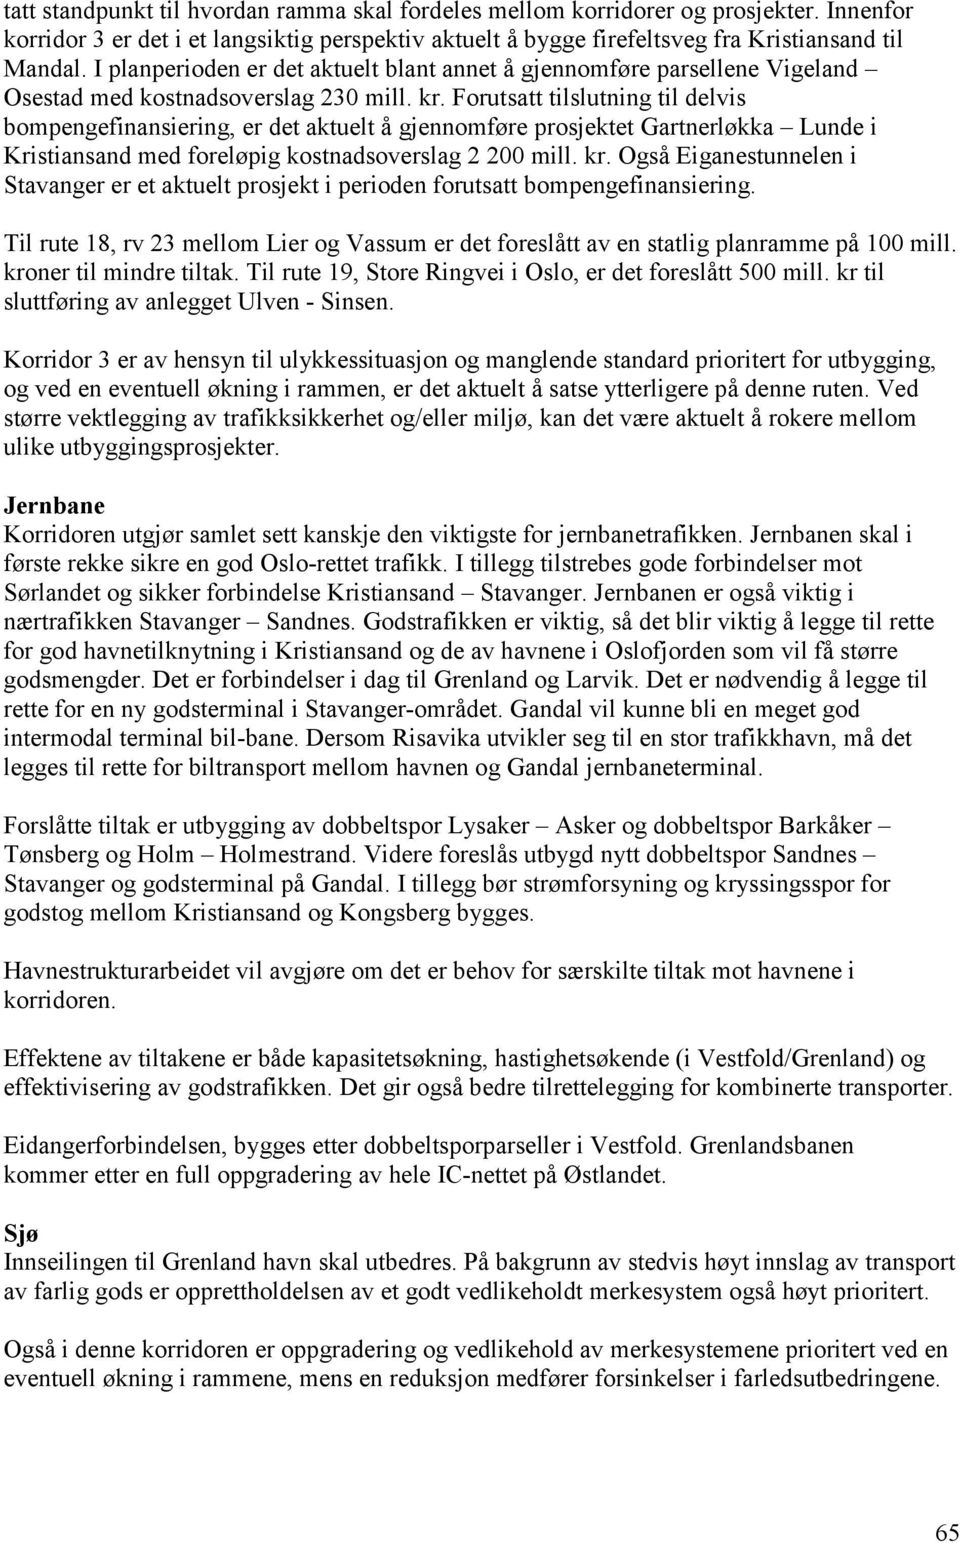 Forutsatt tilslutning til delvis bompengefinansiering, er det aktuelt å gjennomføre prosjektet Gartnerløkka Lunde i Kristiansand med foreløpig kostnadsoverslag 2 200 mill. kr.